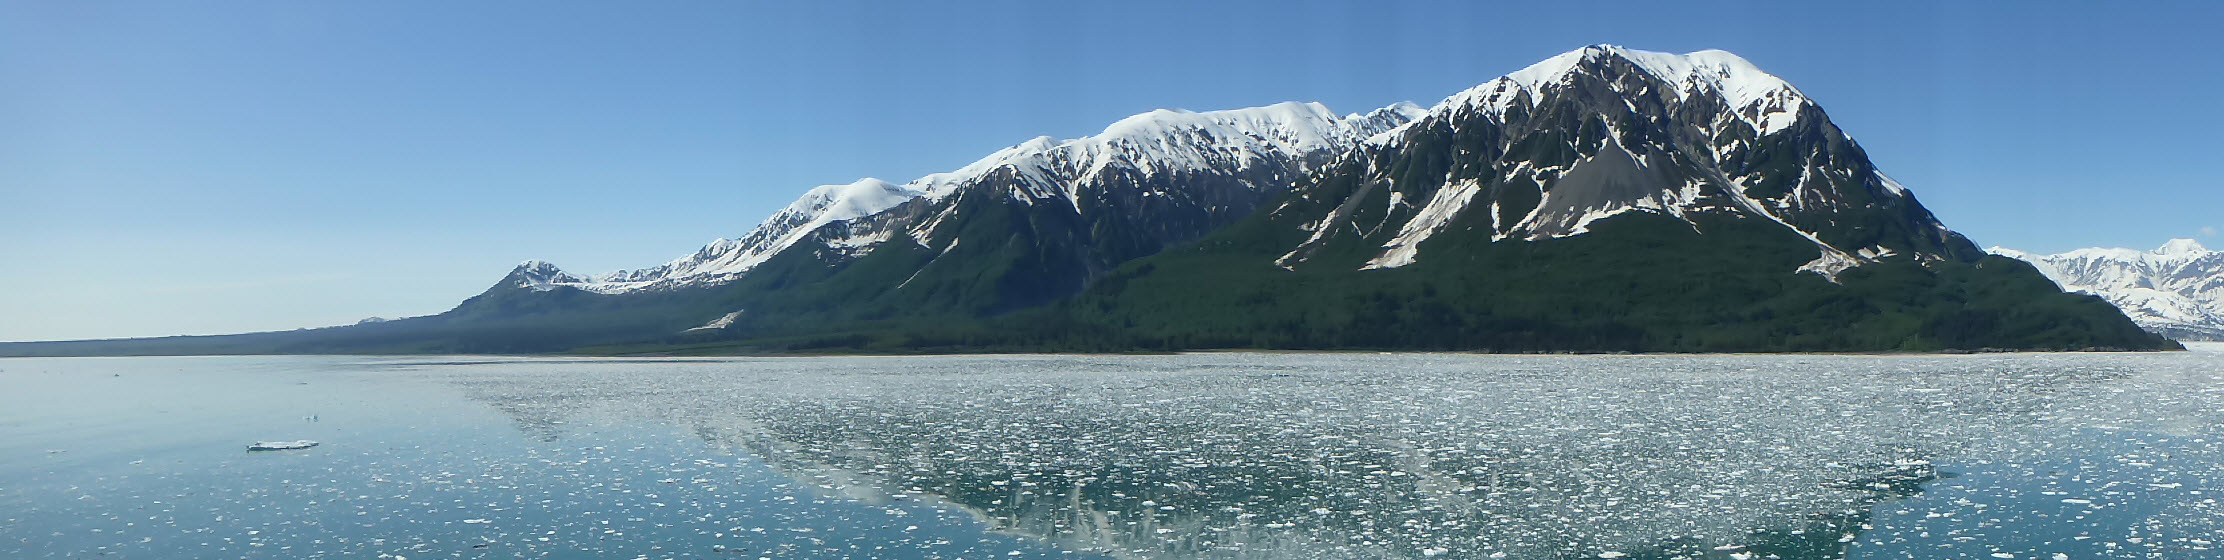 Mountain Landscape in Alaska